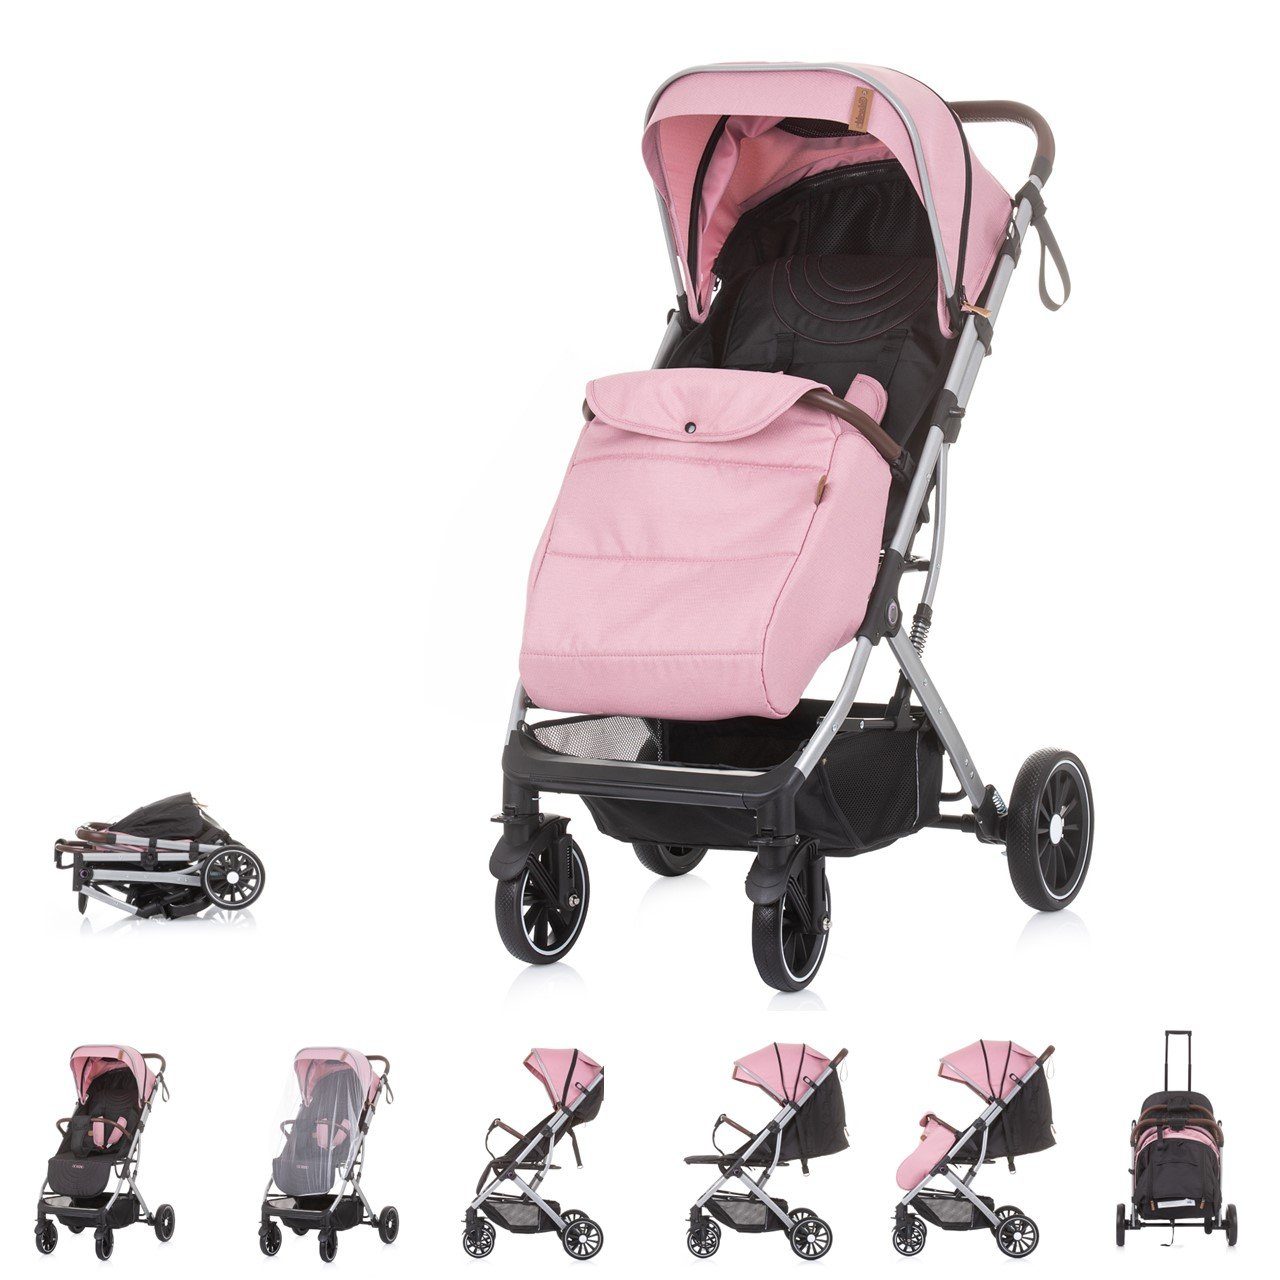 Verkaufskunde Chipolino Kinder-Buggy Kinderwagen, Buggy Combo rosa Fußabdeckung kg, Moskitonetz 22 gefedert Räder